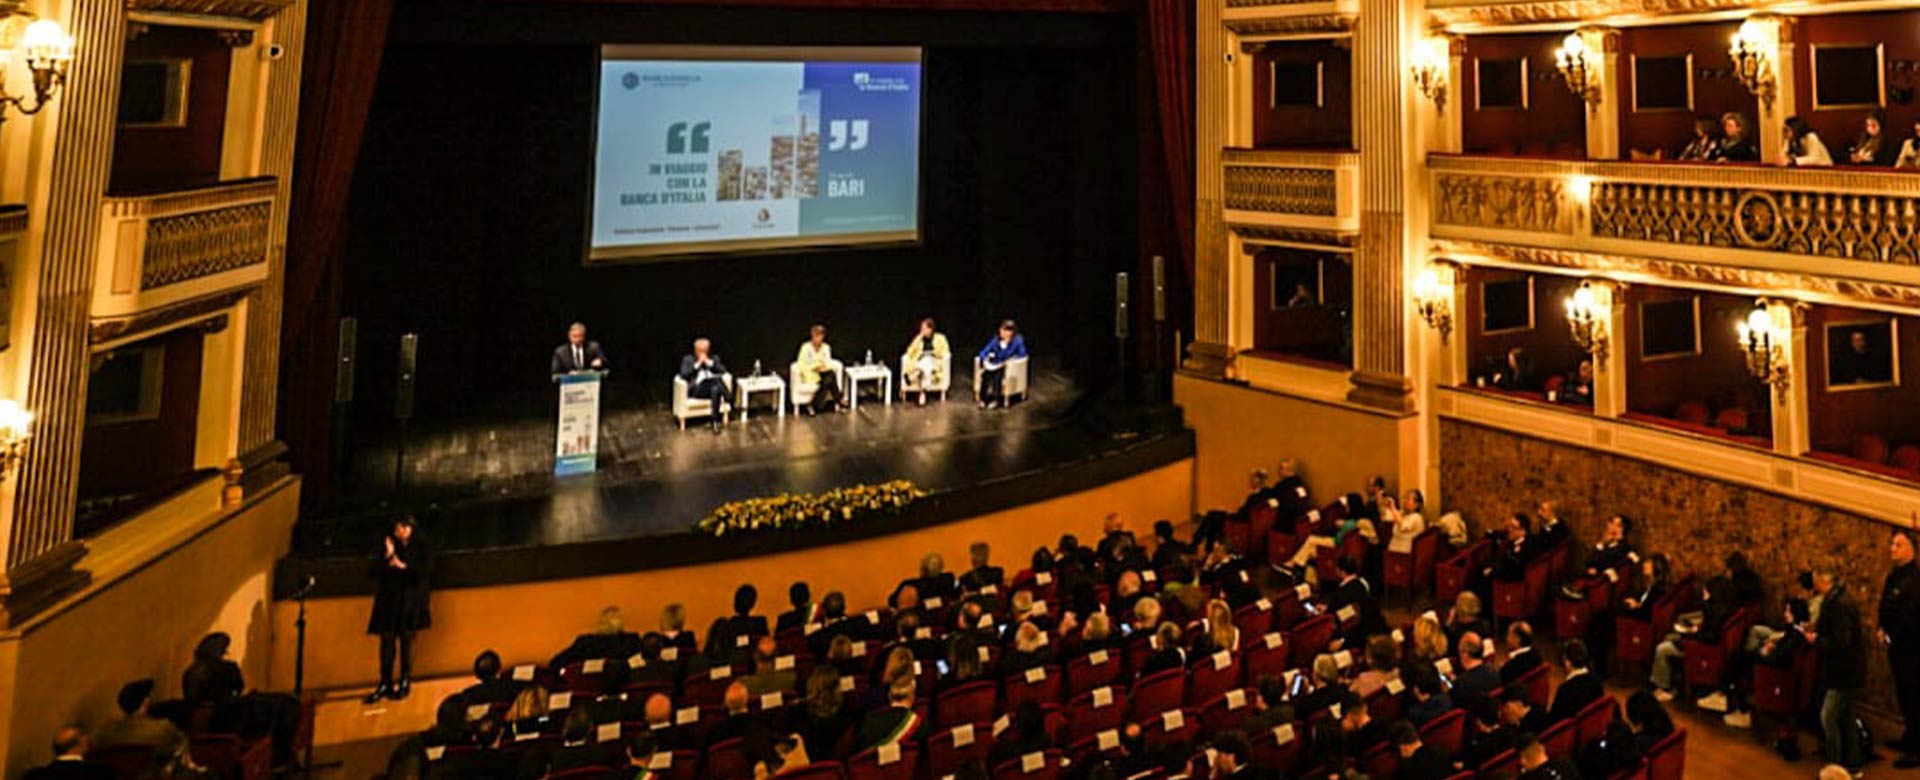 L’incontro organizzato da Banca d’Italia nel Teatro comunale Niccolò Piccinni di Bari